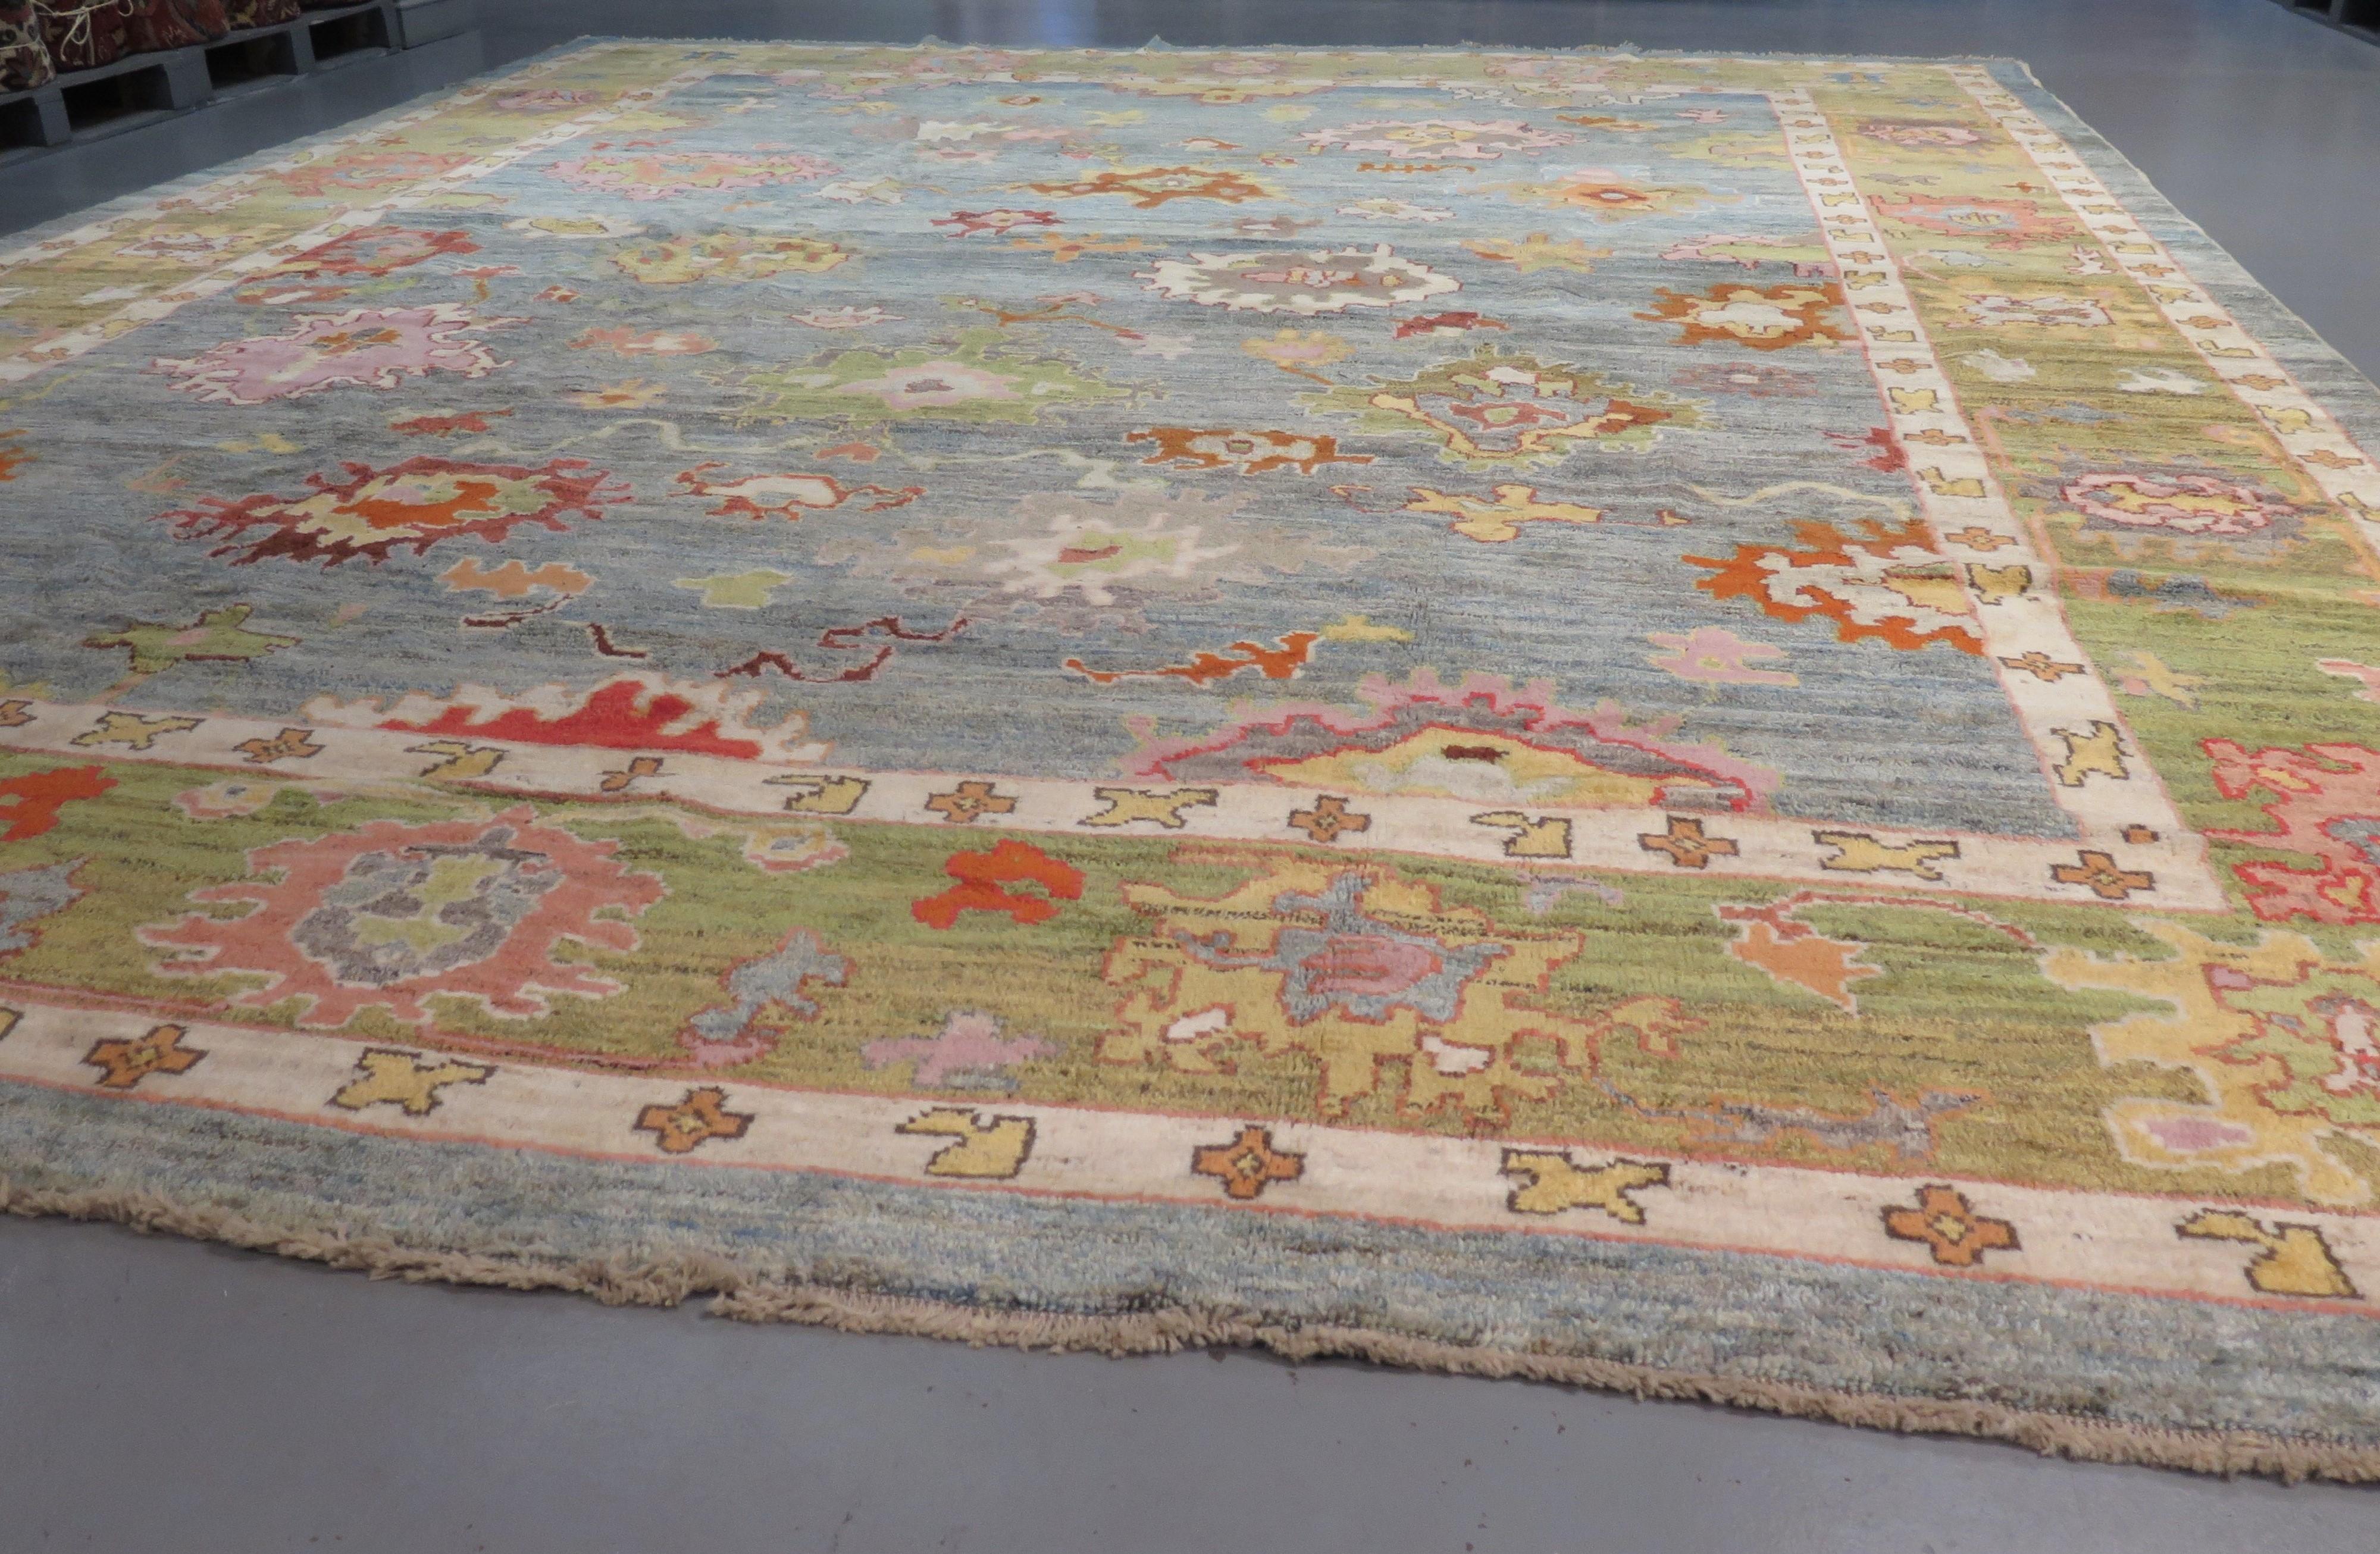 Magnifique tapis Oushak, tissé à la main en Turquie avec de la laine lustrée et des couleurs teintées dans la masse. Une interprétation moderne des tapis Oushak du XIXe siècle avec un dessin à grande échelle et une variété harmonieuse de couleurs